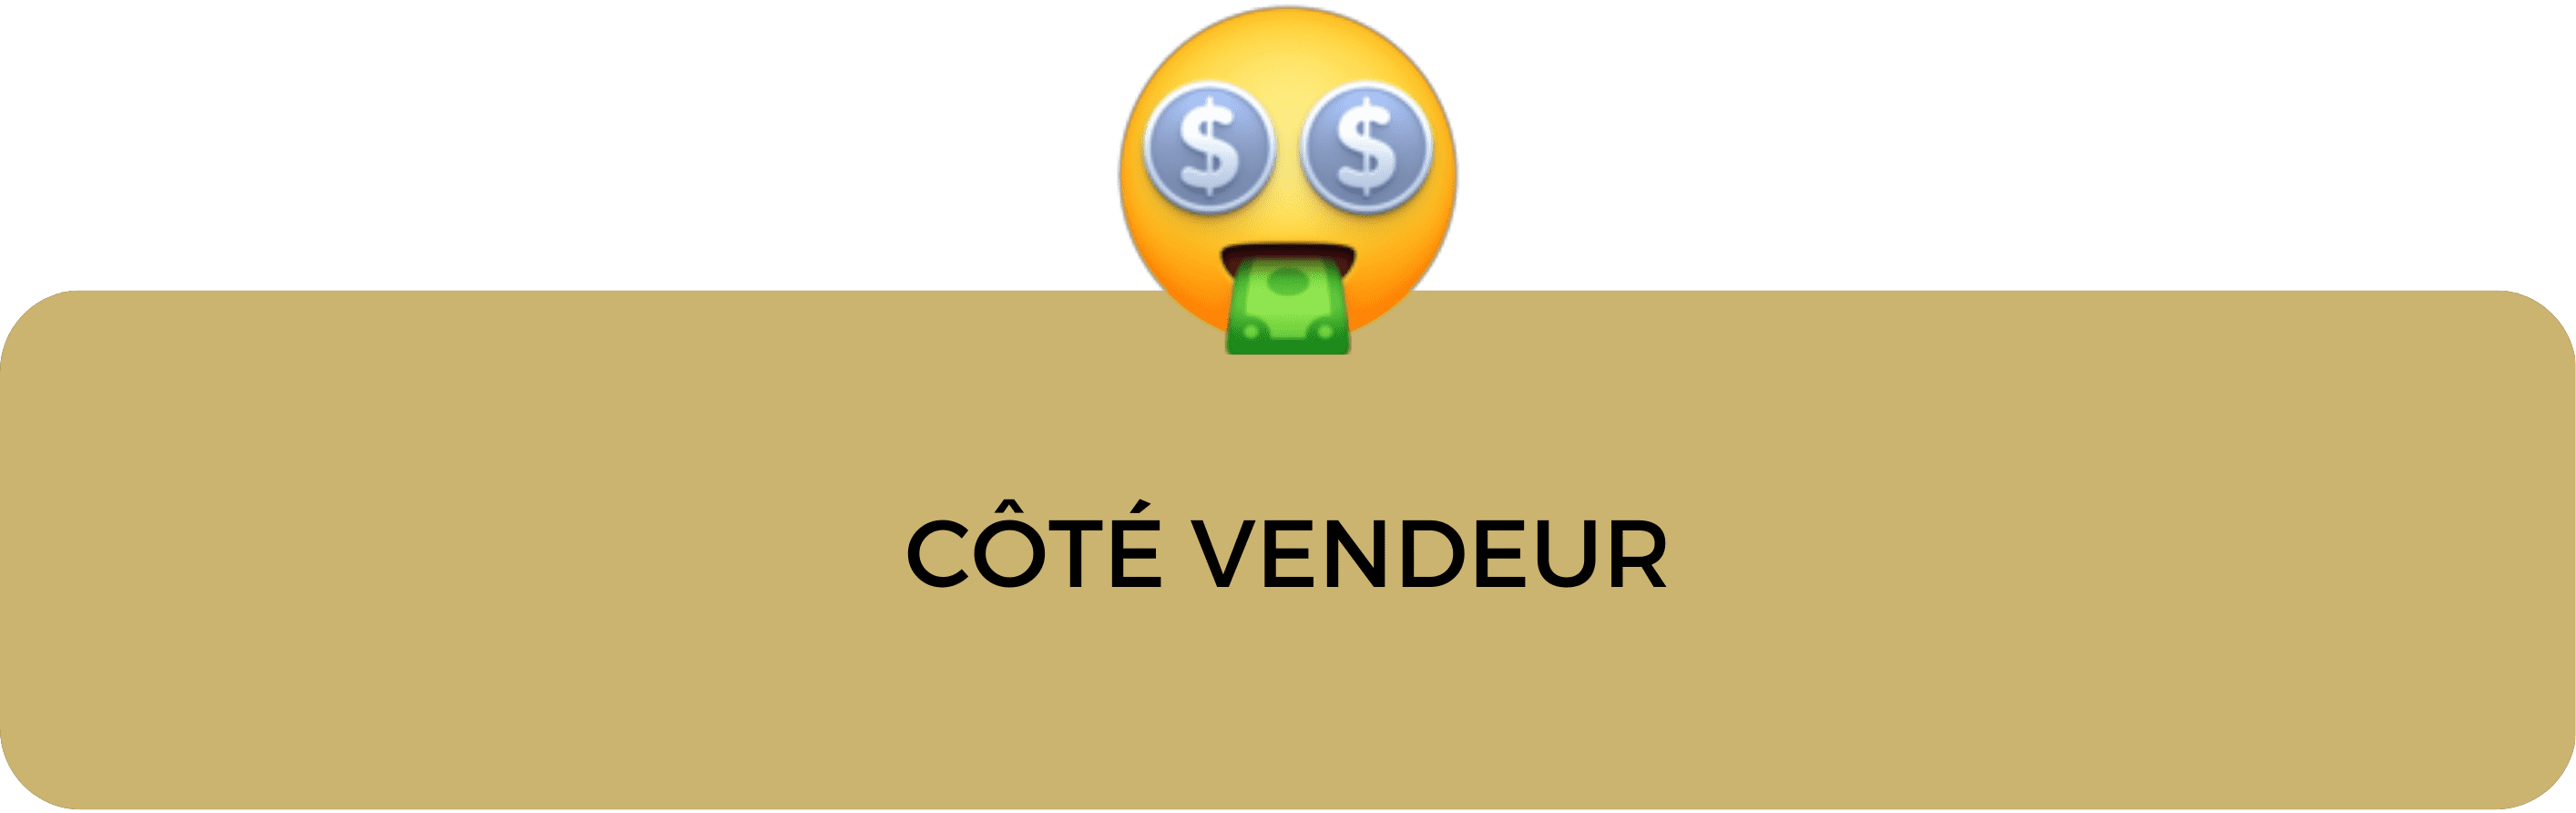 vendeur_fonds_commerce_sous_offre